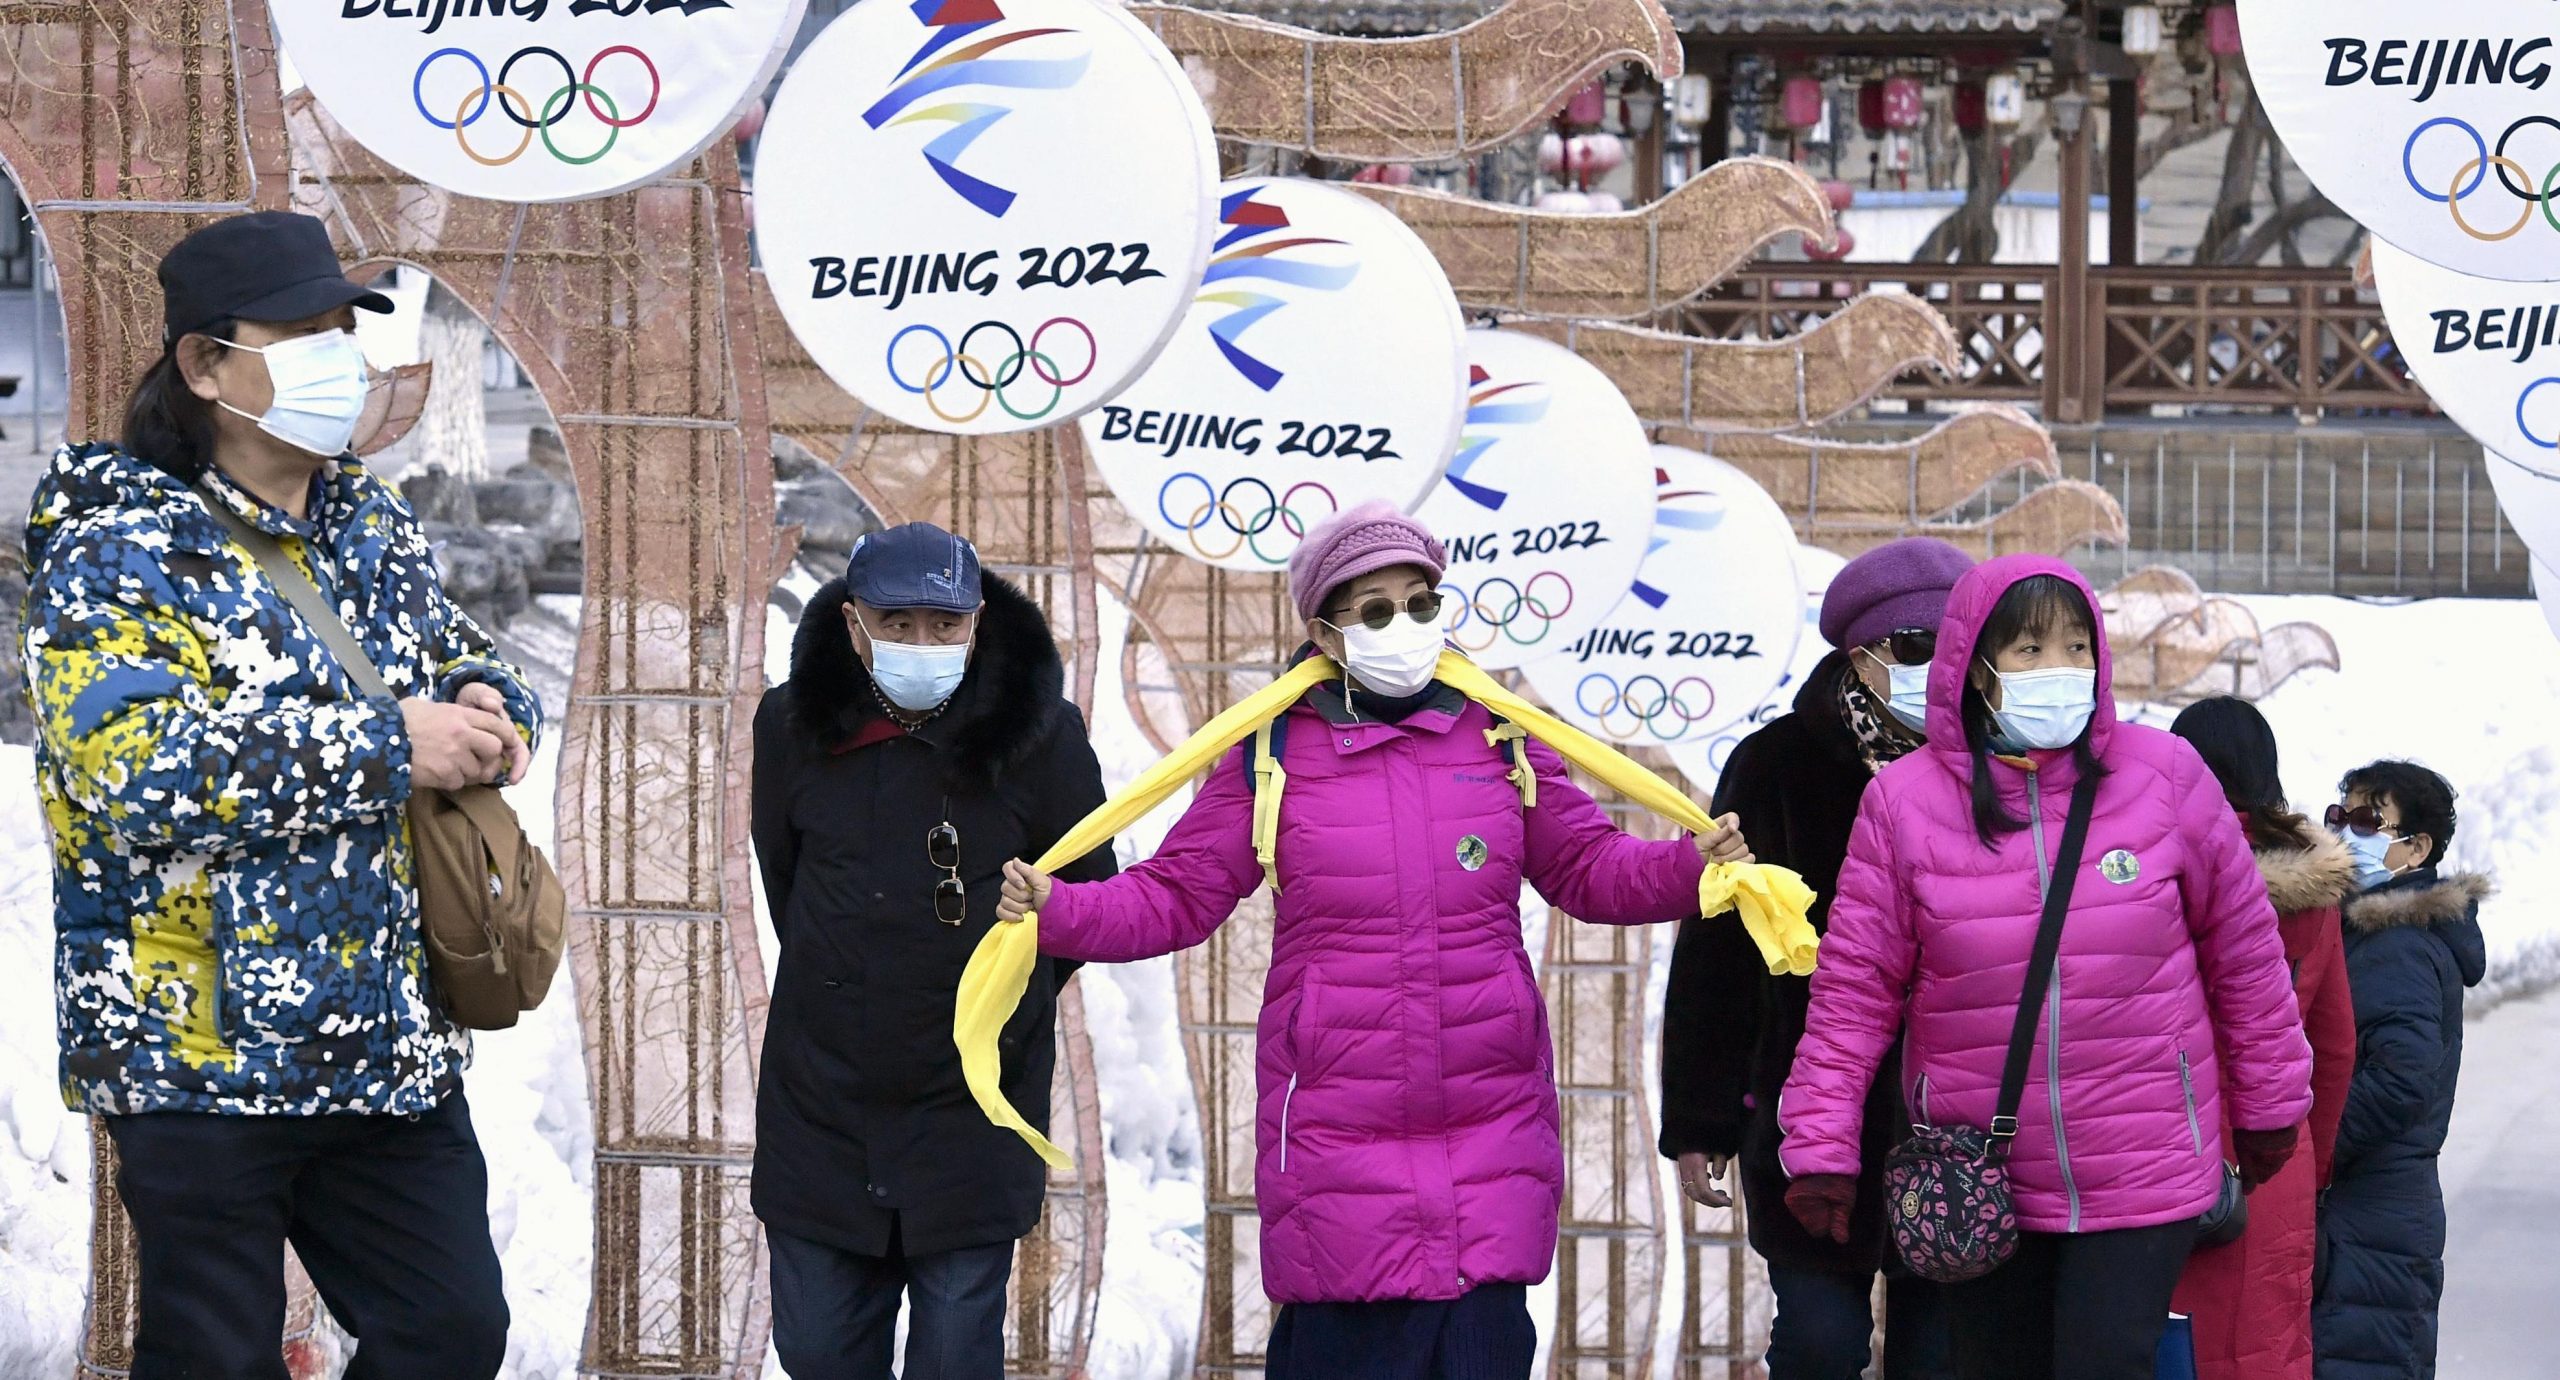 La Chine parviendra-t-elle à redorer son image international grâce aux jeux olympiques d'hiver de Pékin du 4 au 20 février 2022 ? (Source : Gzero)